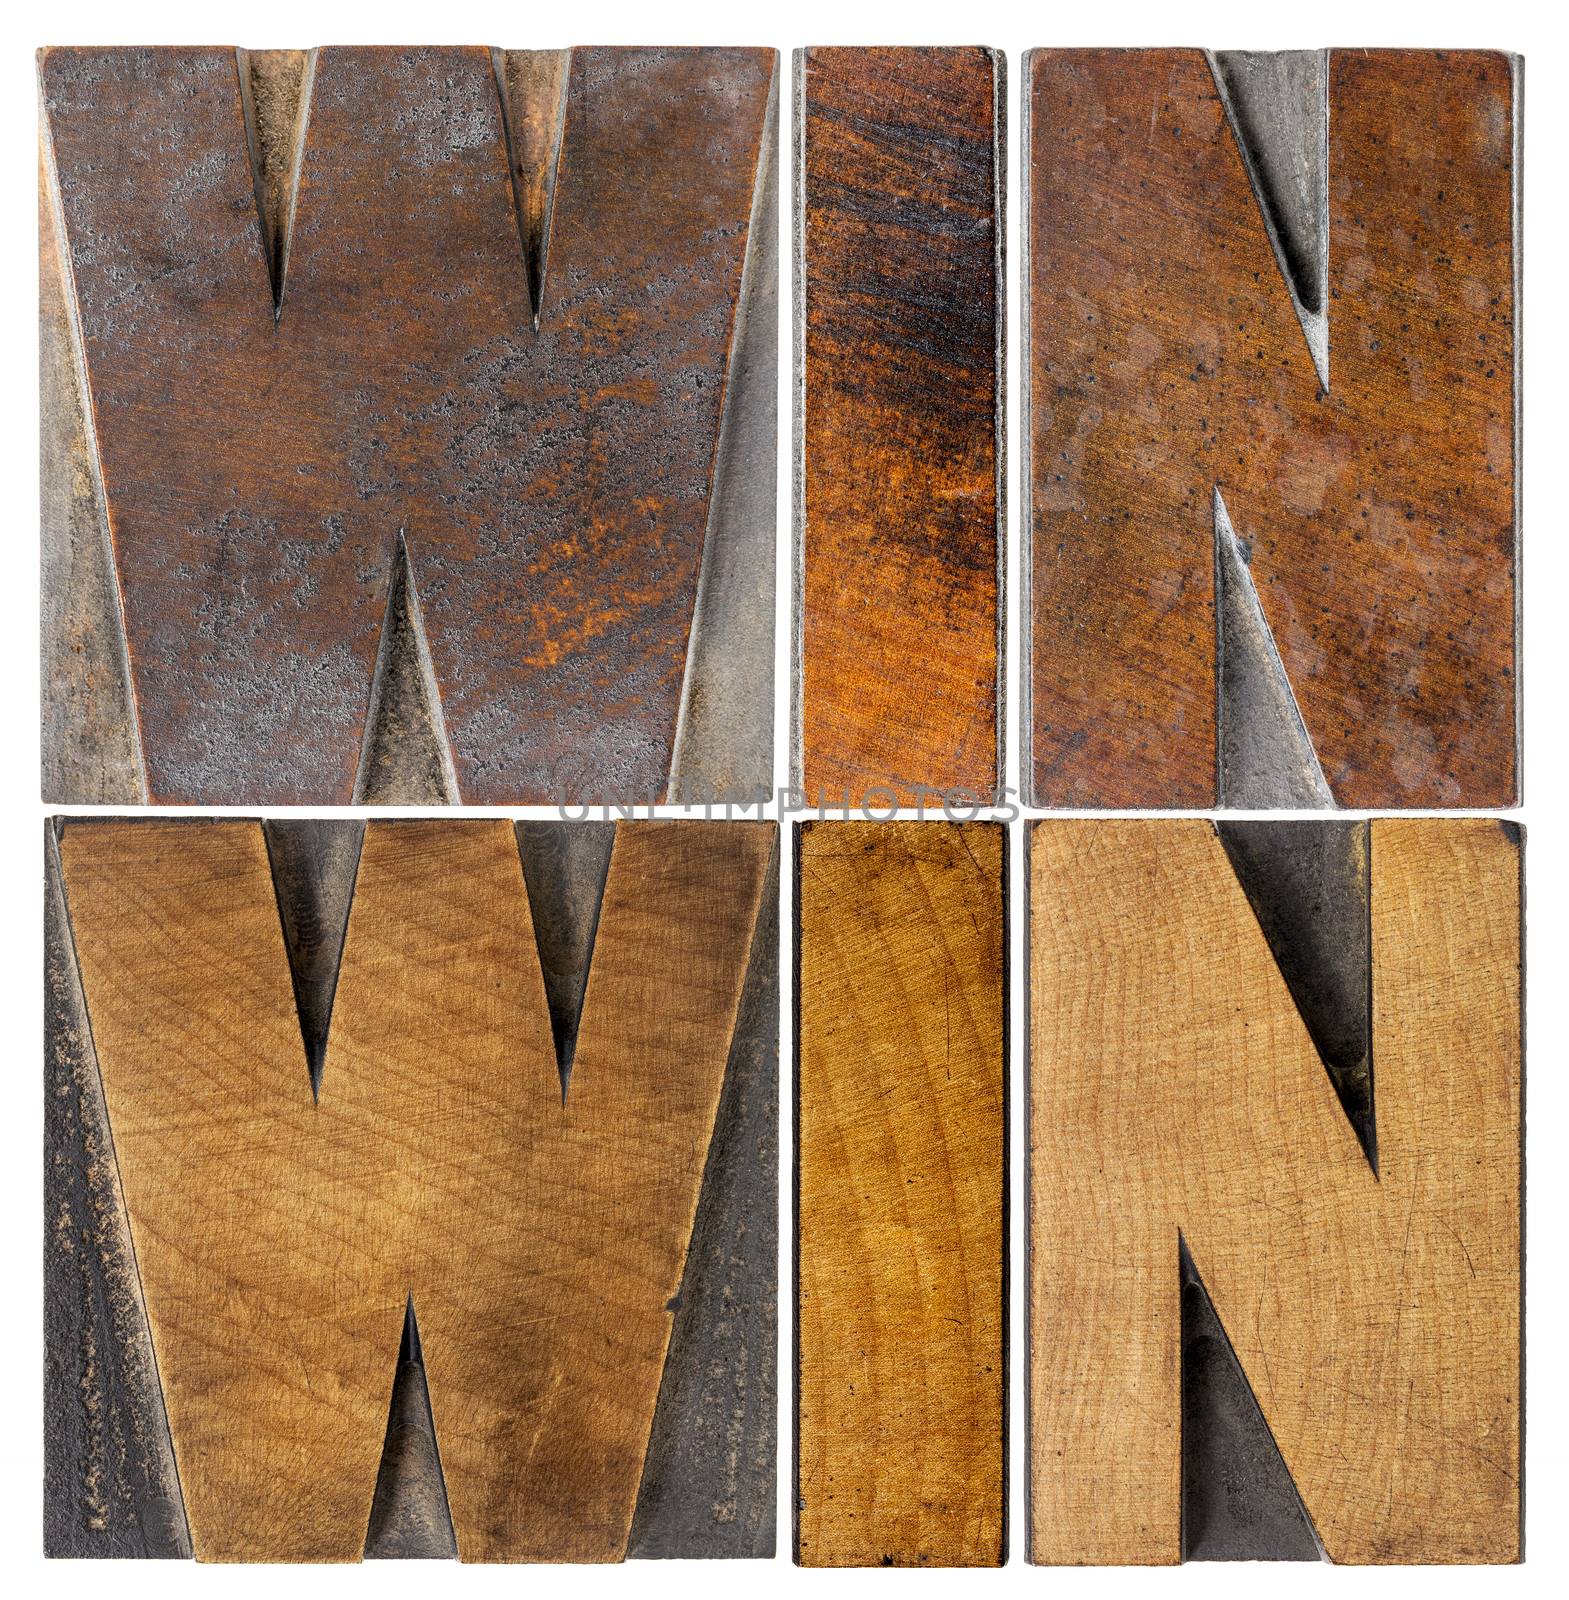 win-win in wood type by PixelsAway